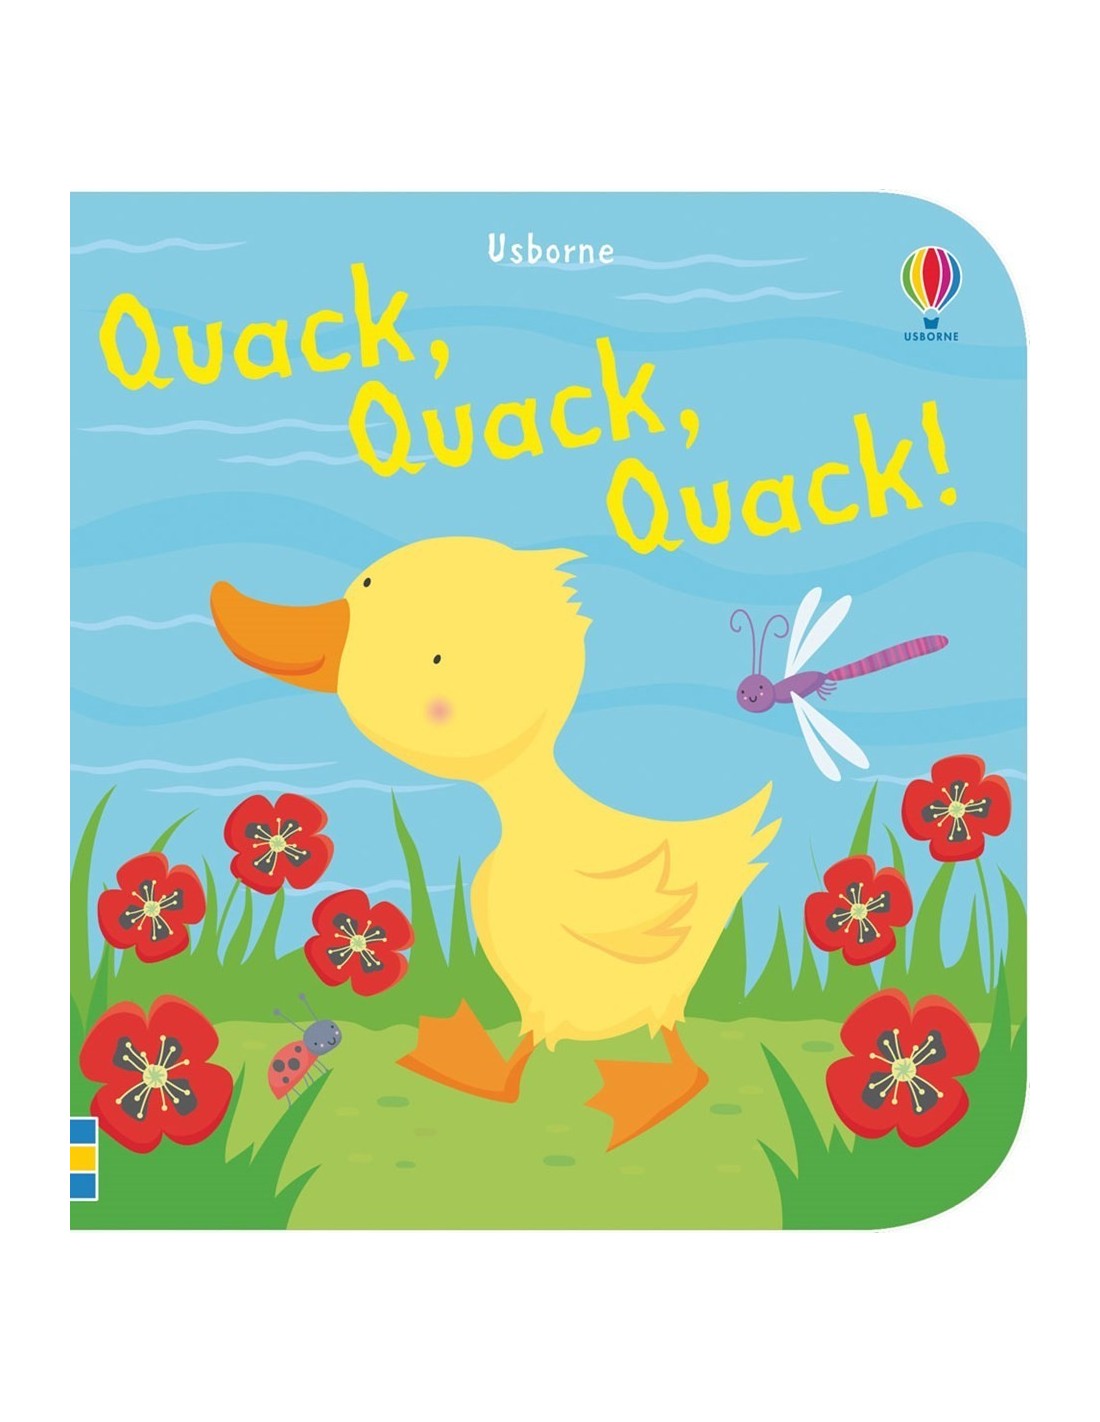 Quack, quack, quack bath book